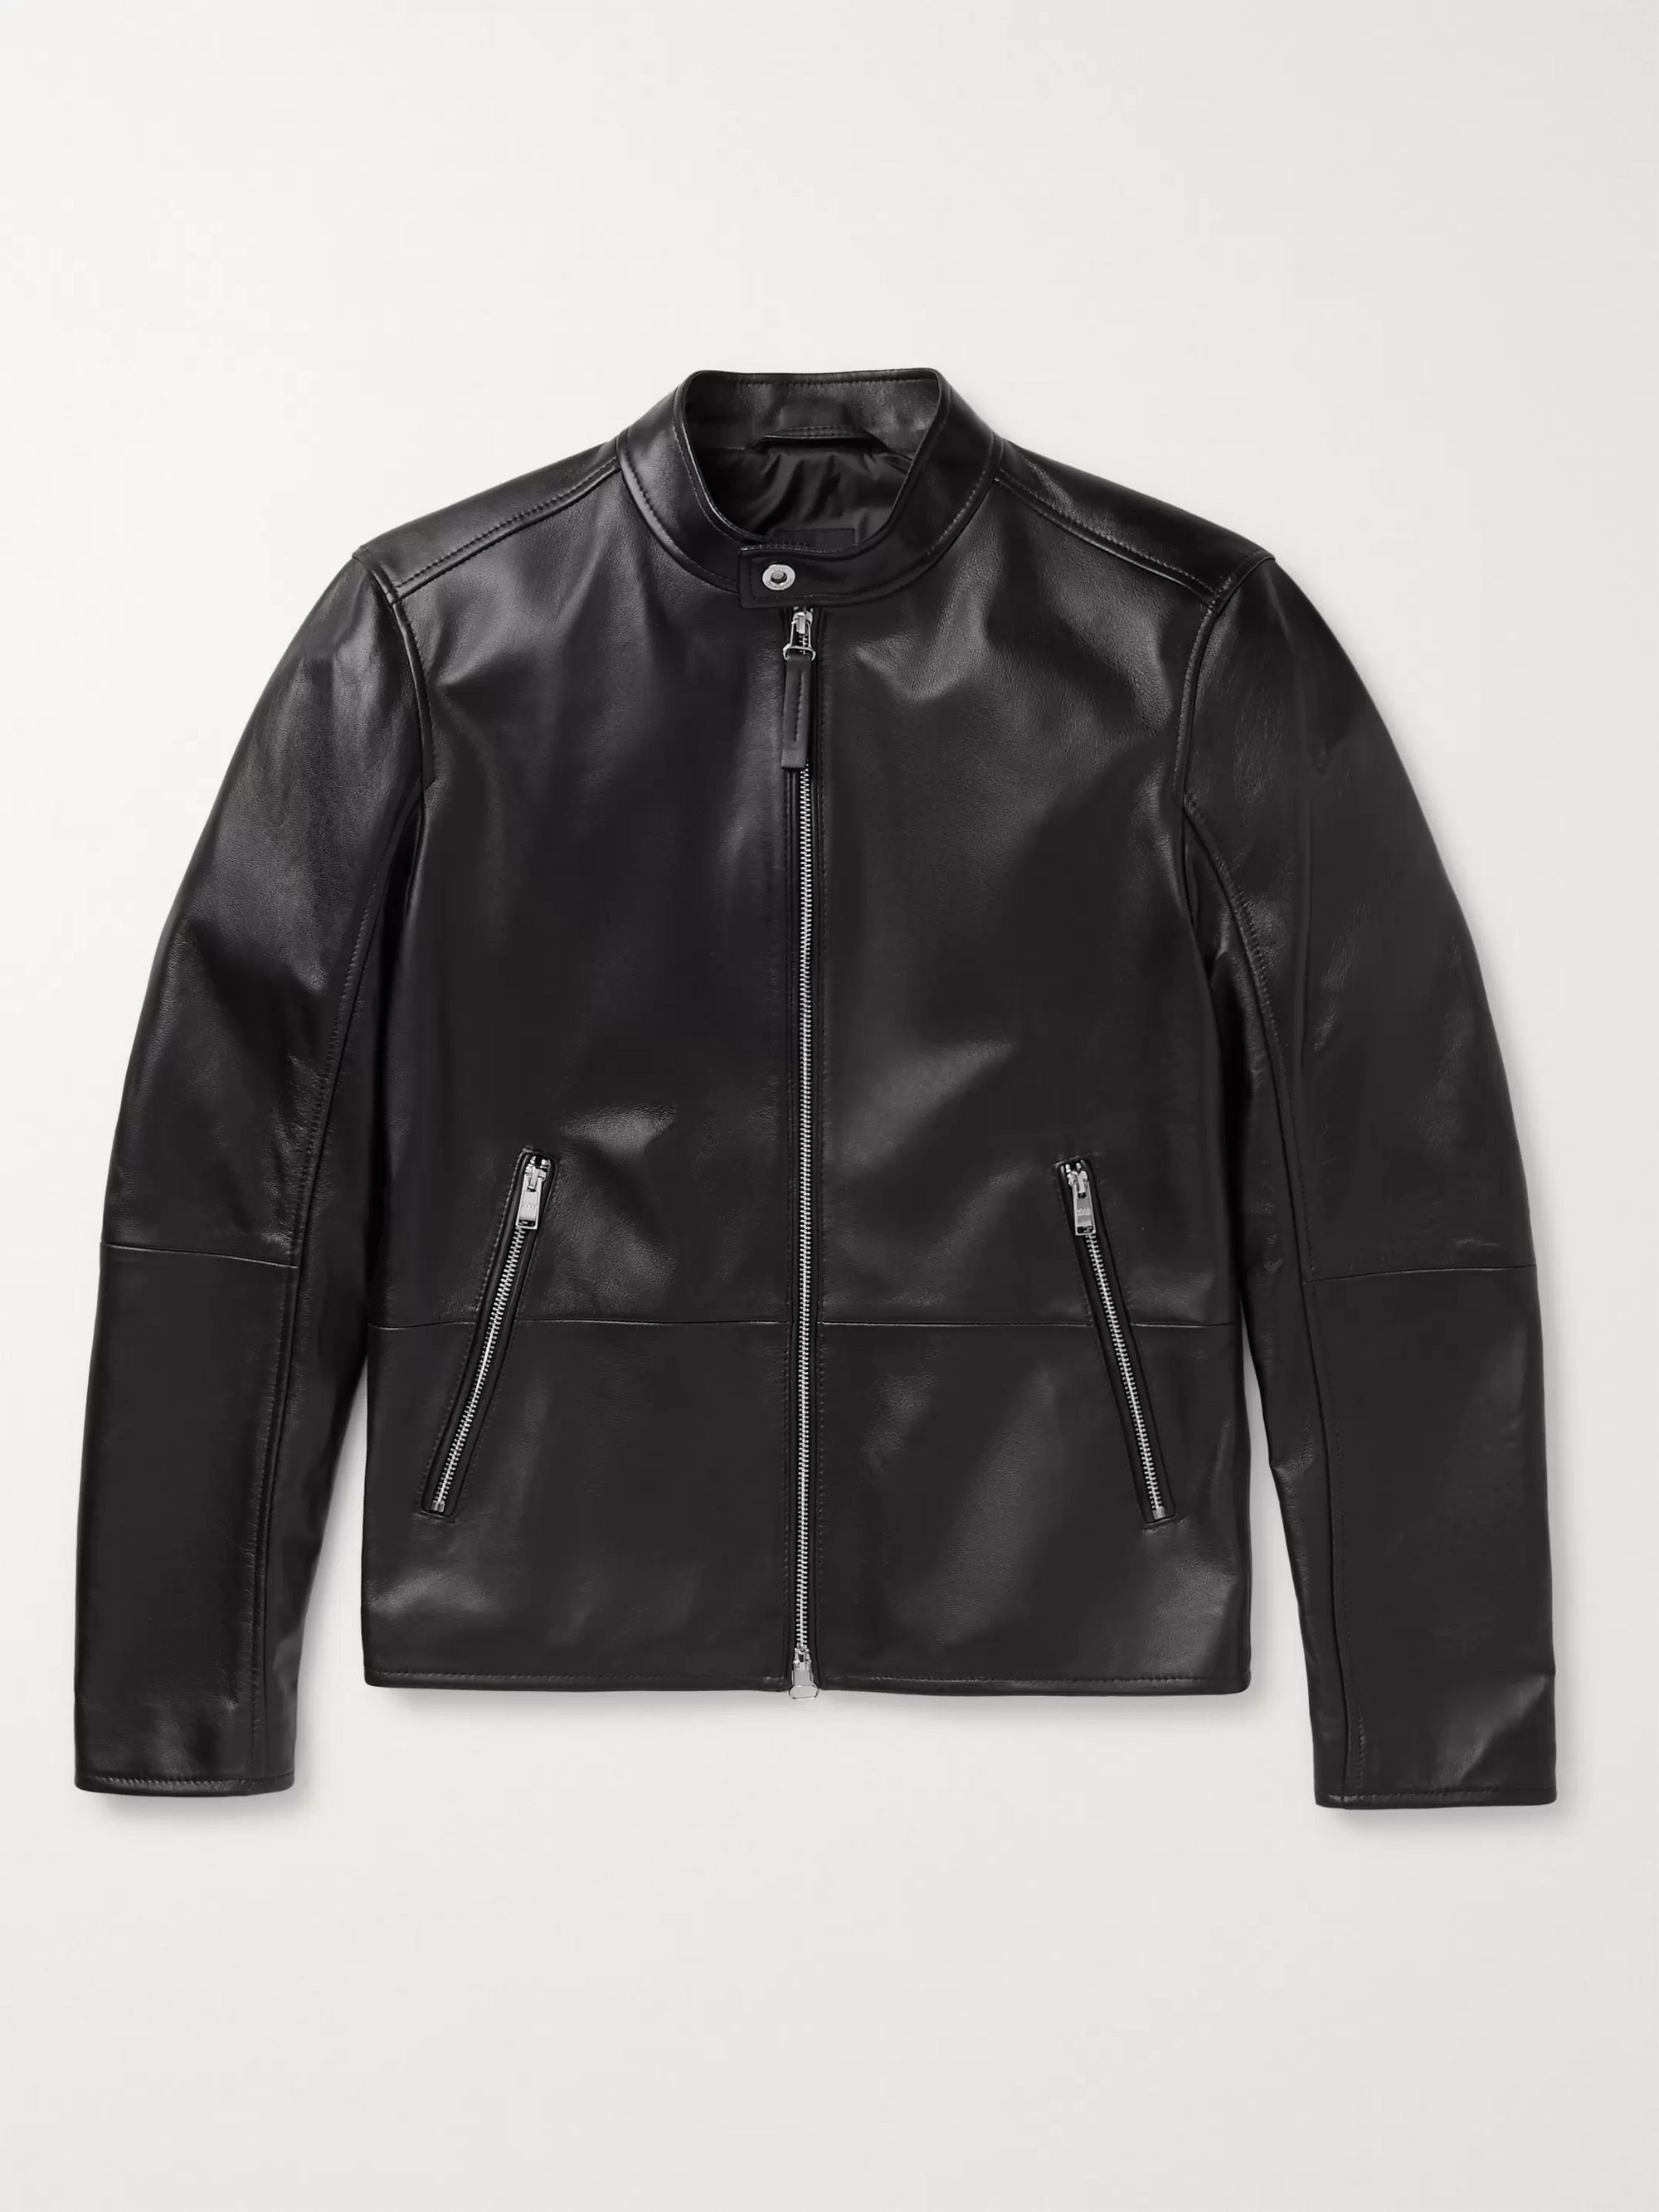 hugo boss jaysee leather jacket